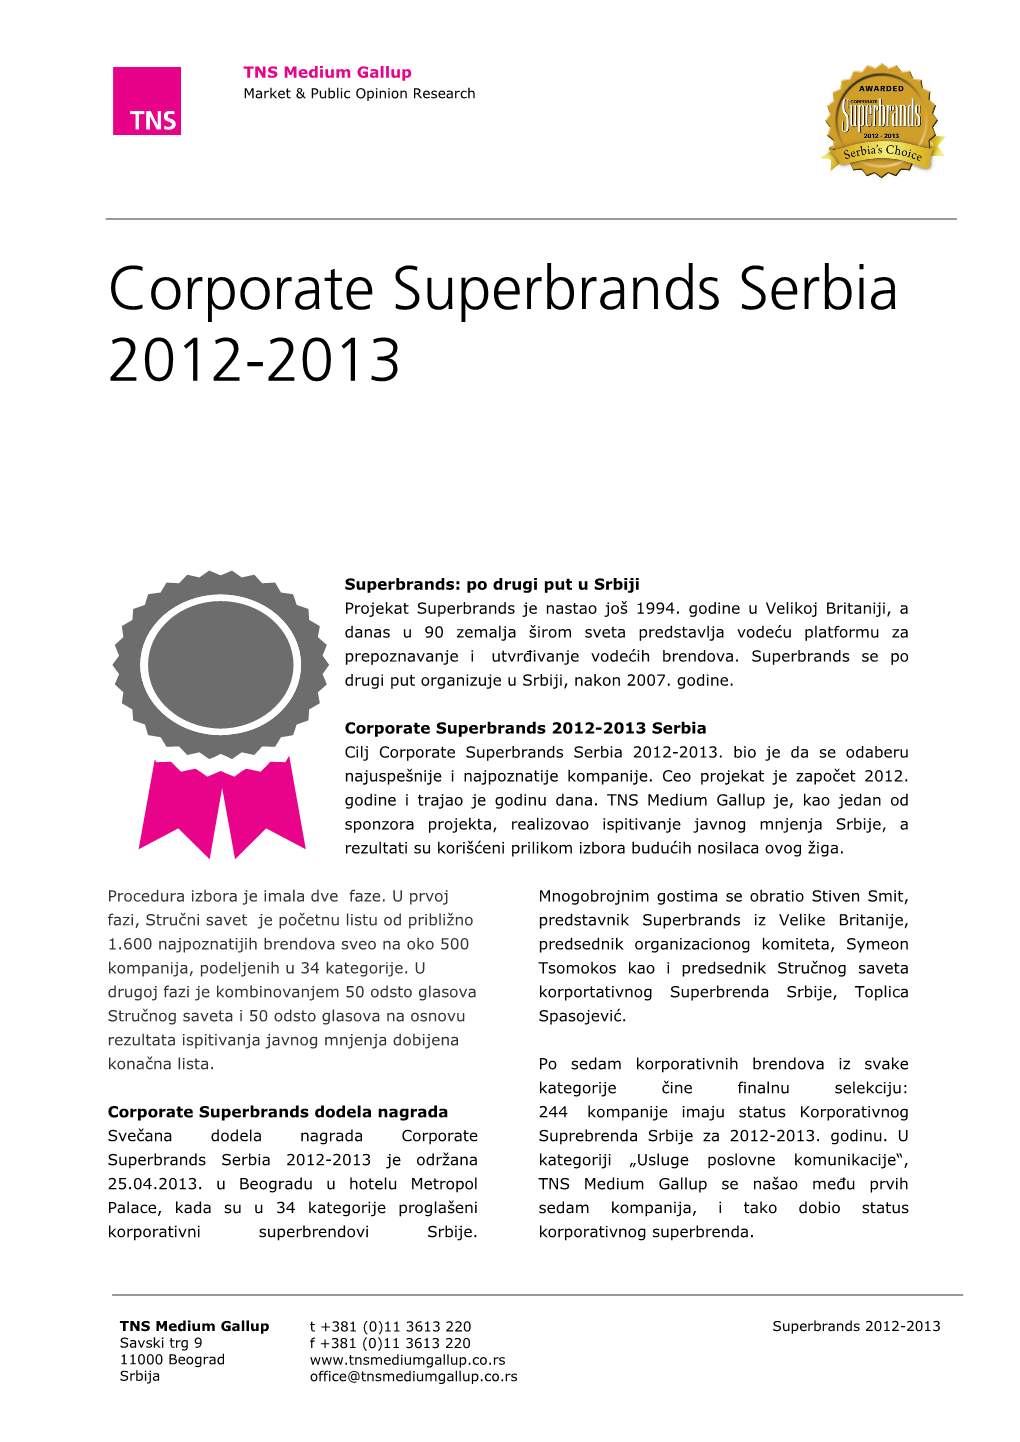 Corporate Superbrands Serbia 2012-2013